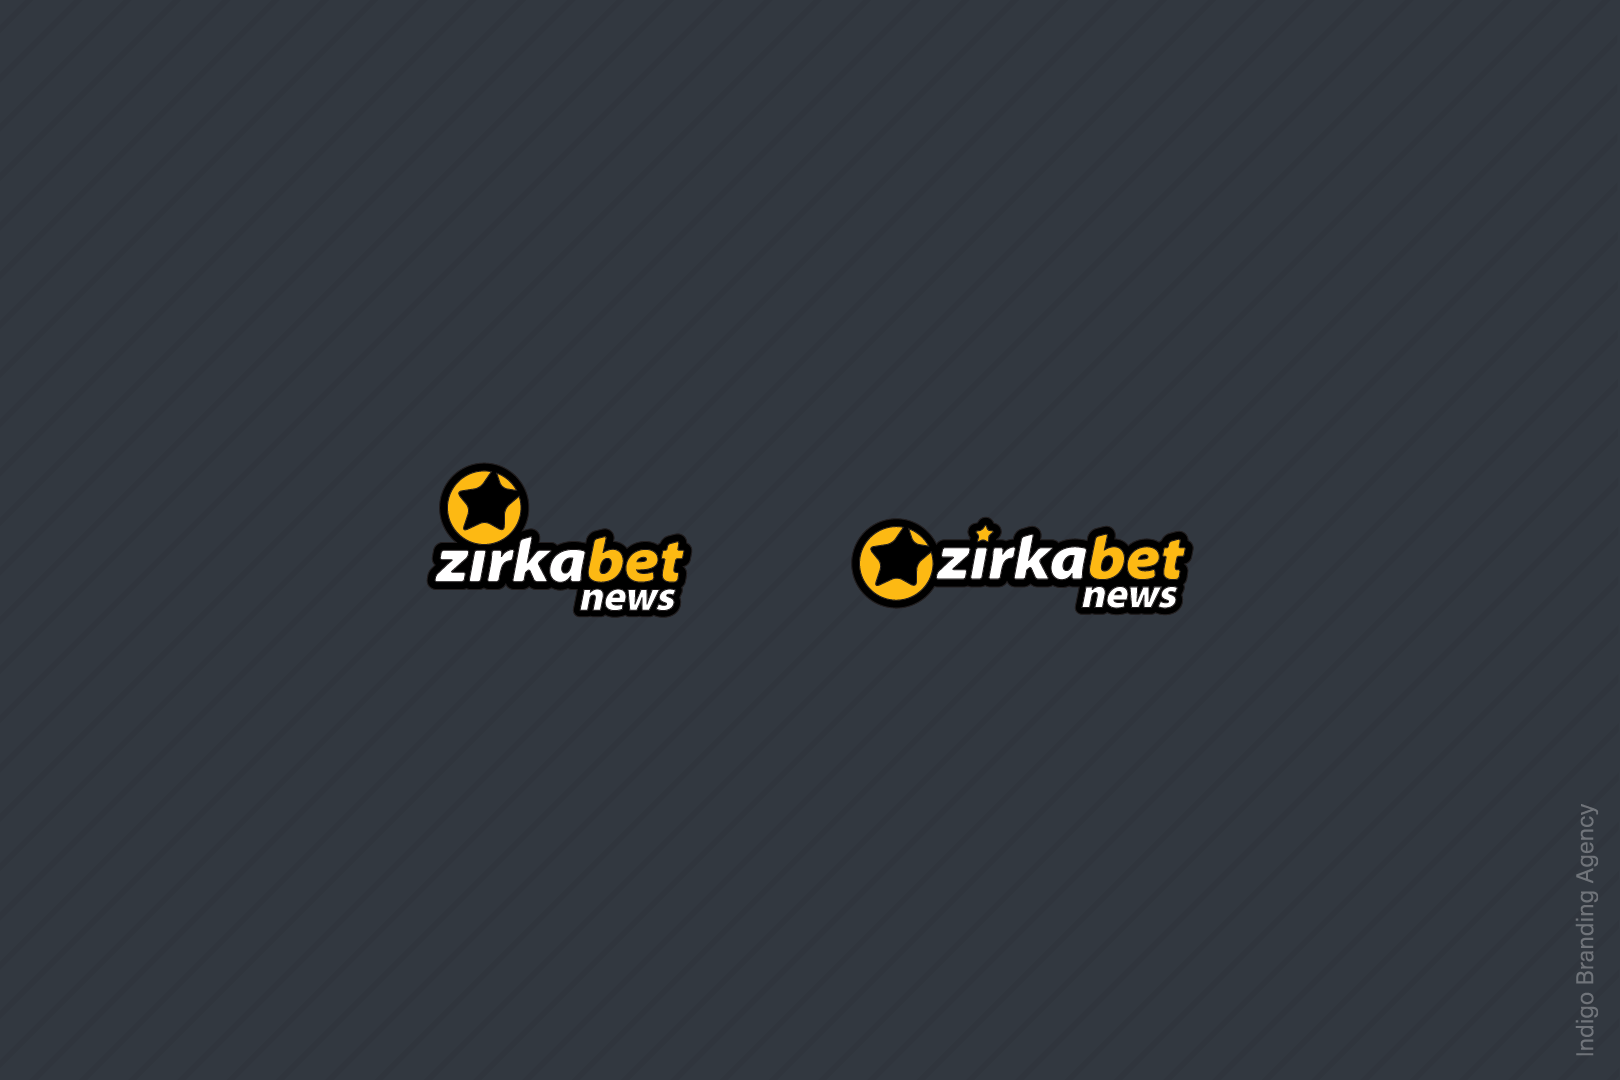 Zirkabet branding and logo design by Indigo branding